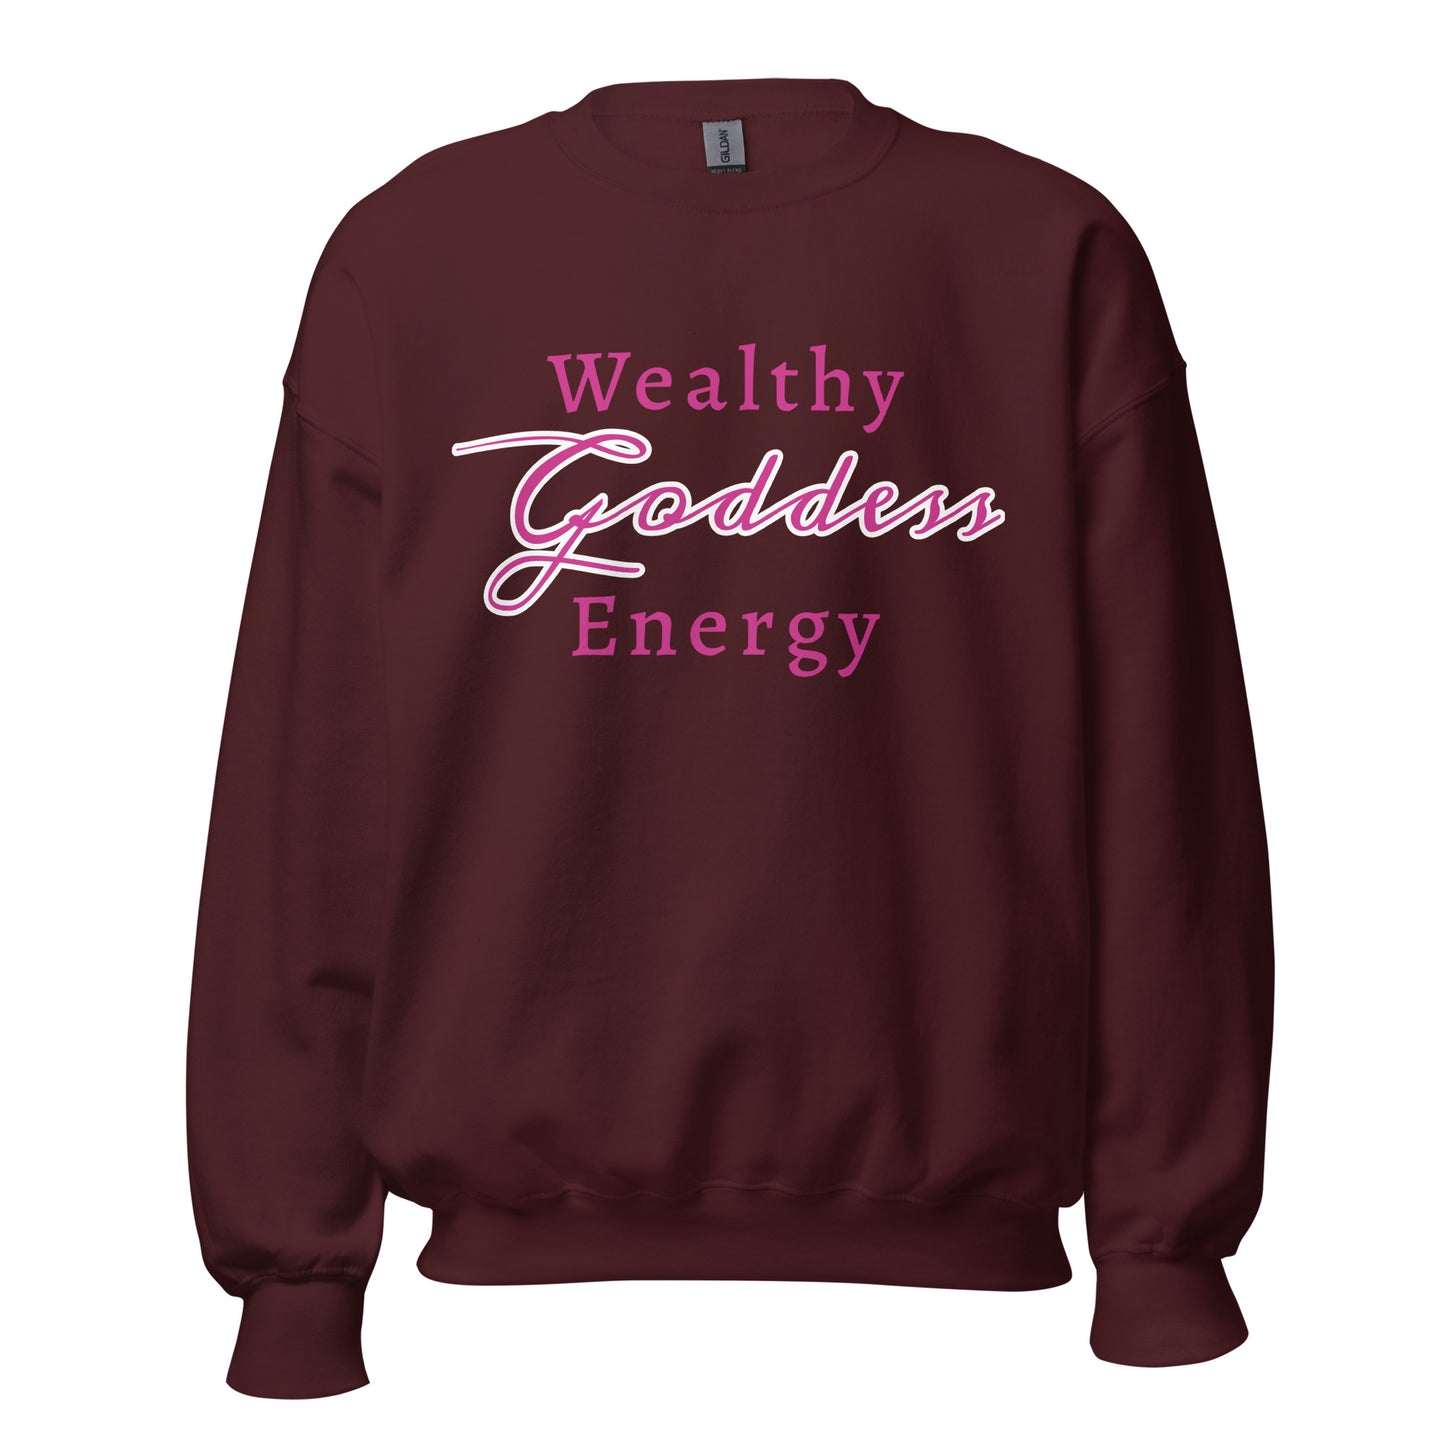 Wealthy Goddess Sweatshirt